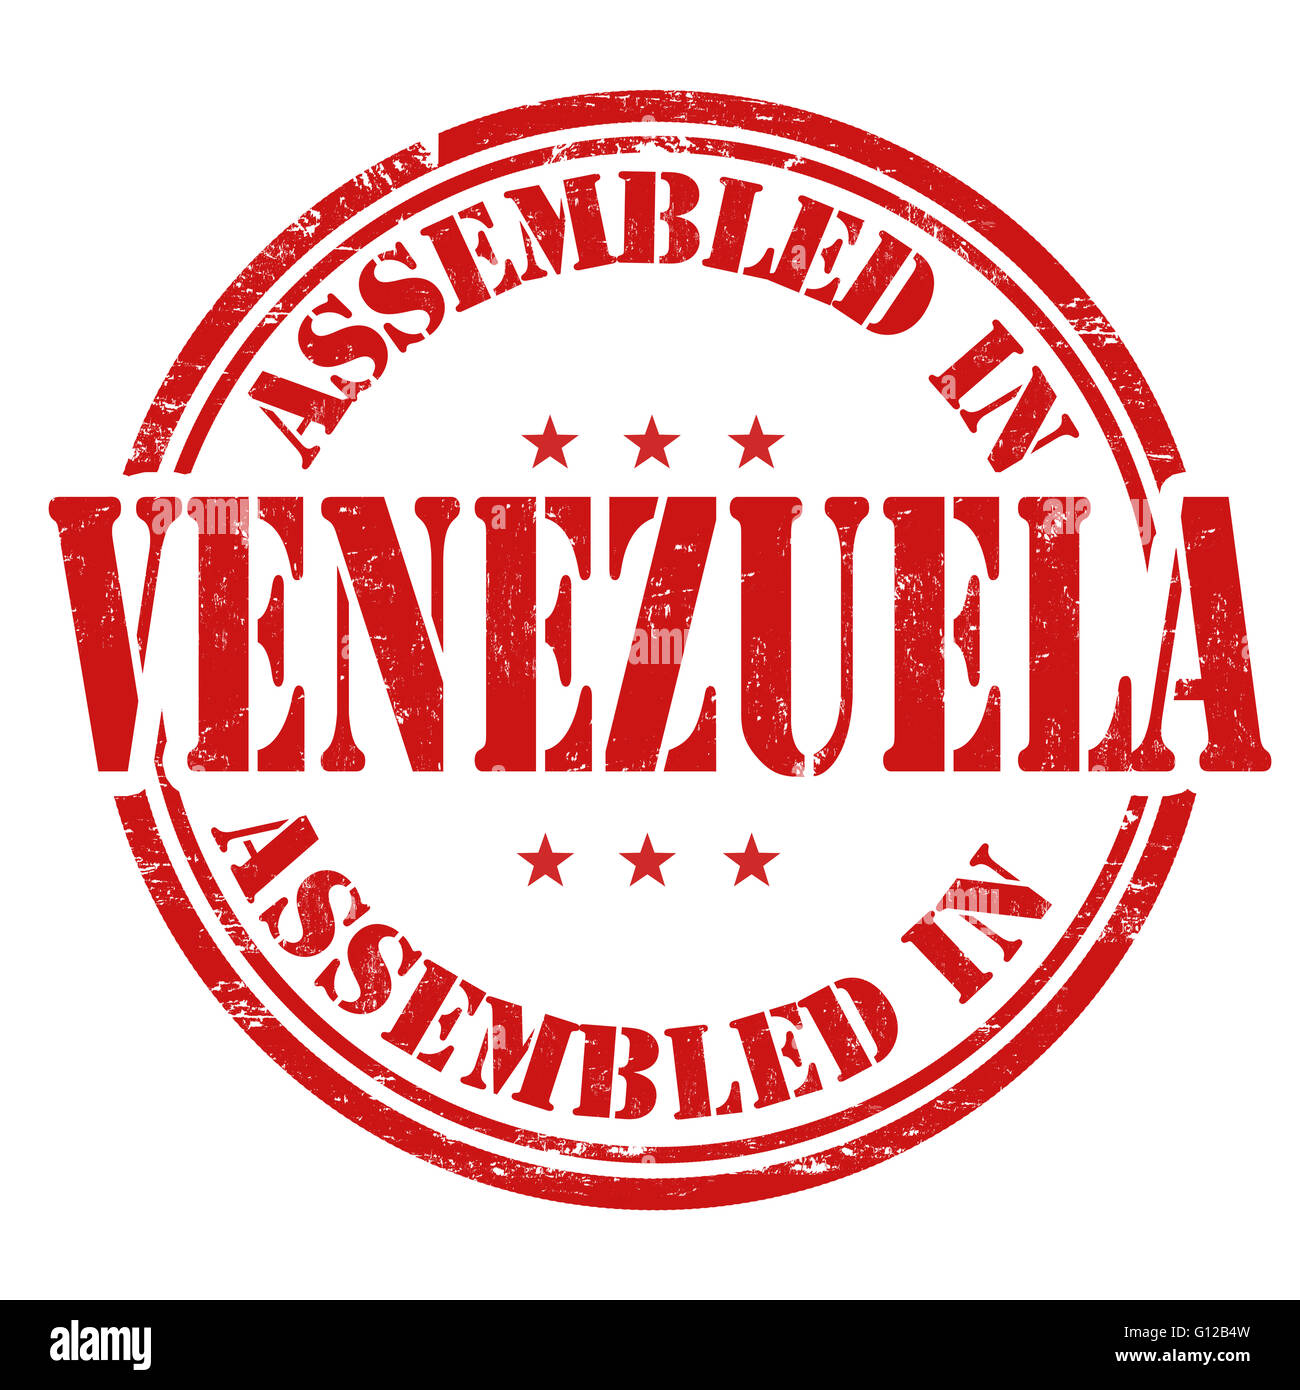 Assemblés dans le Venezuela grunge tampons sur fond blanc, vector illustration Banque D'Images